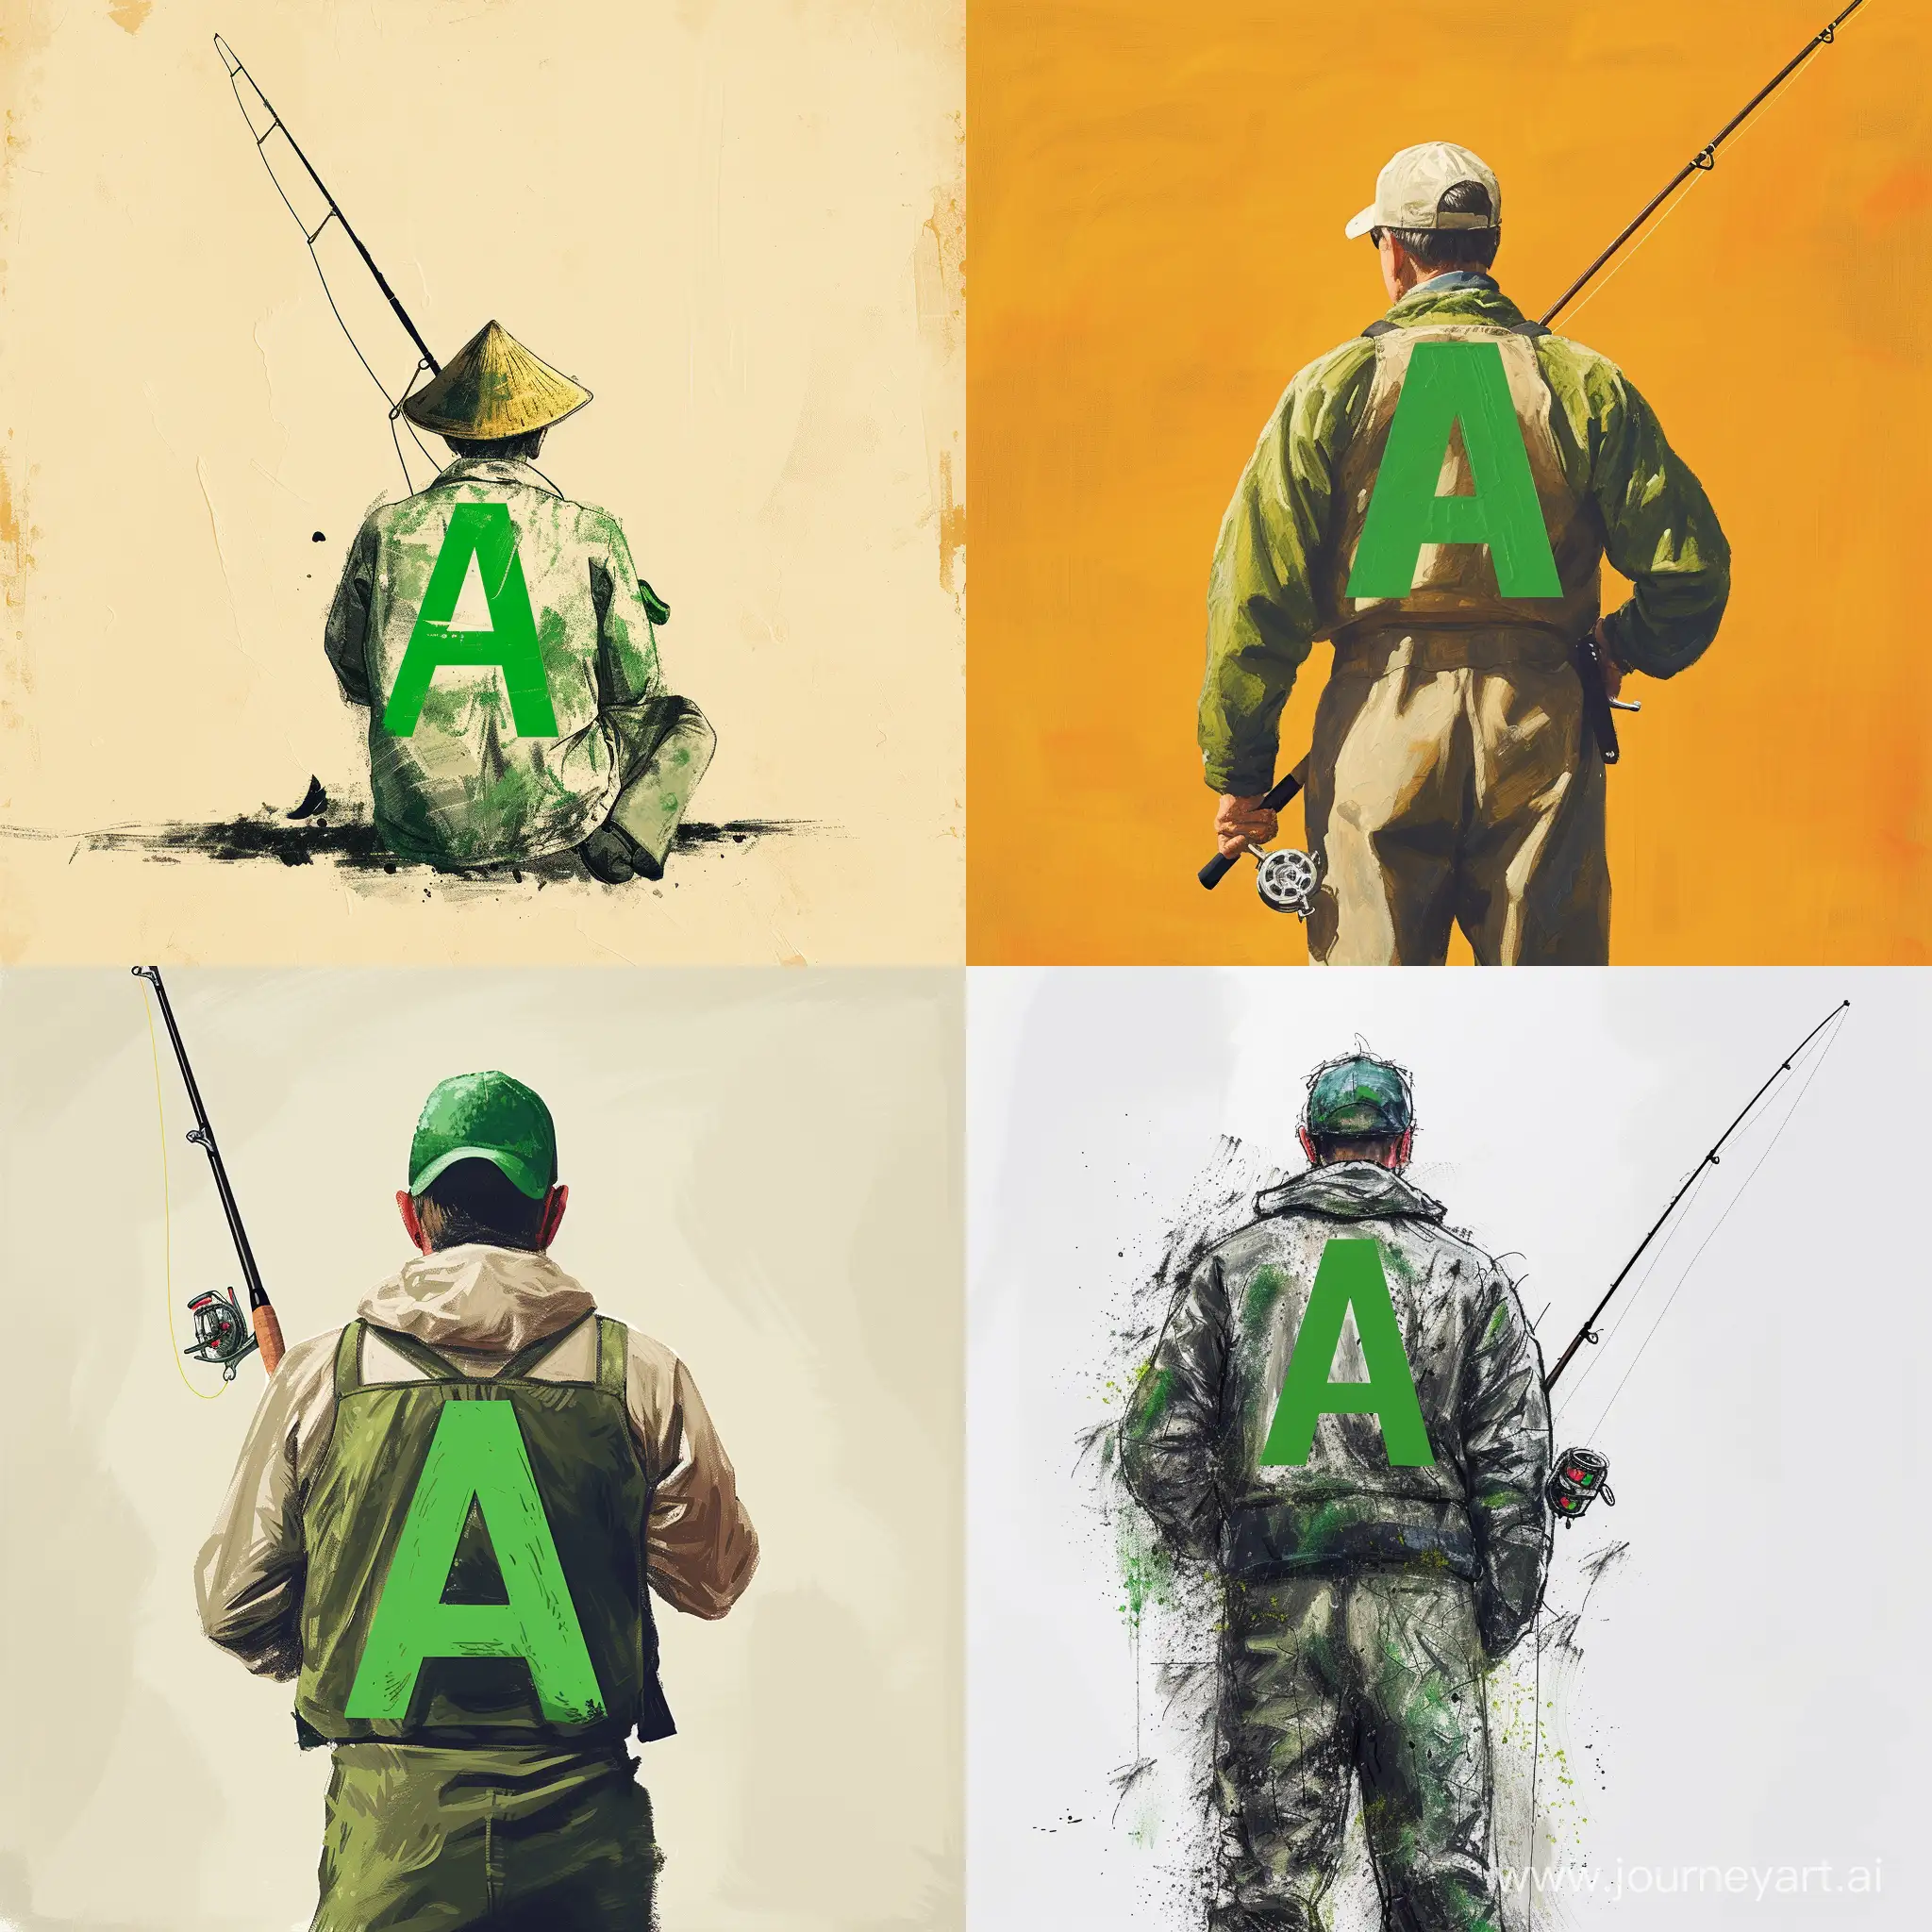 рыбак с удочкой и зеленой буквой А на спине  минимализм 